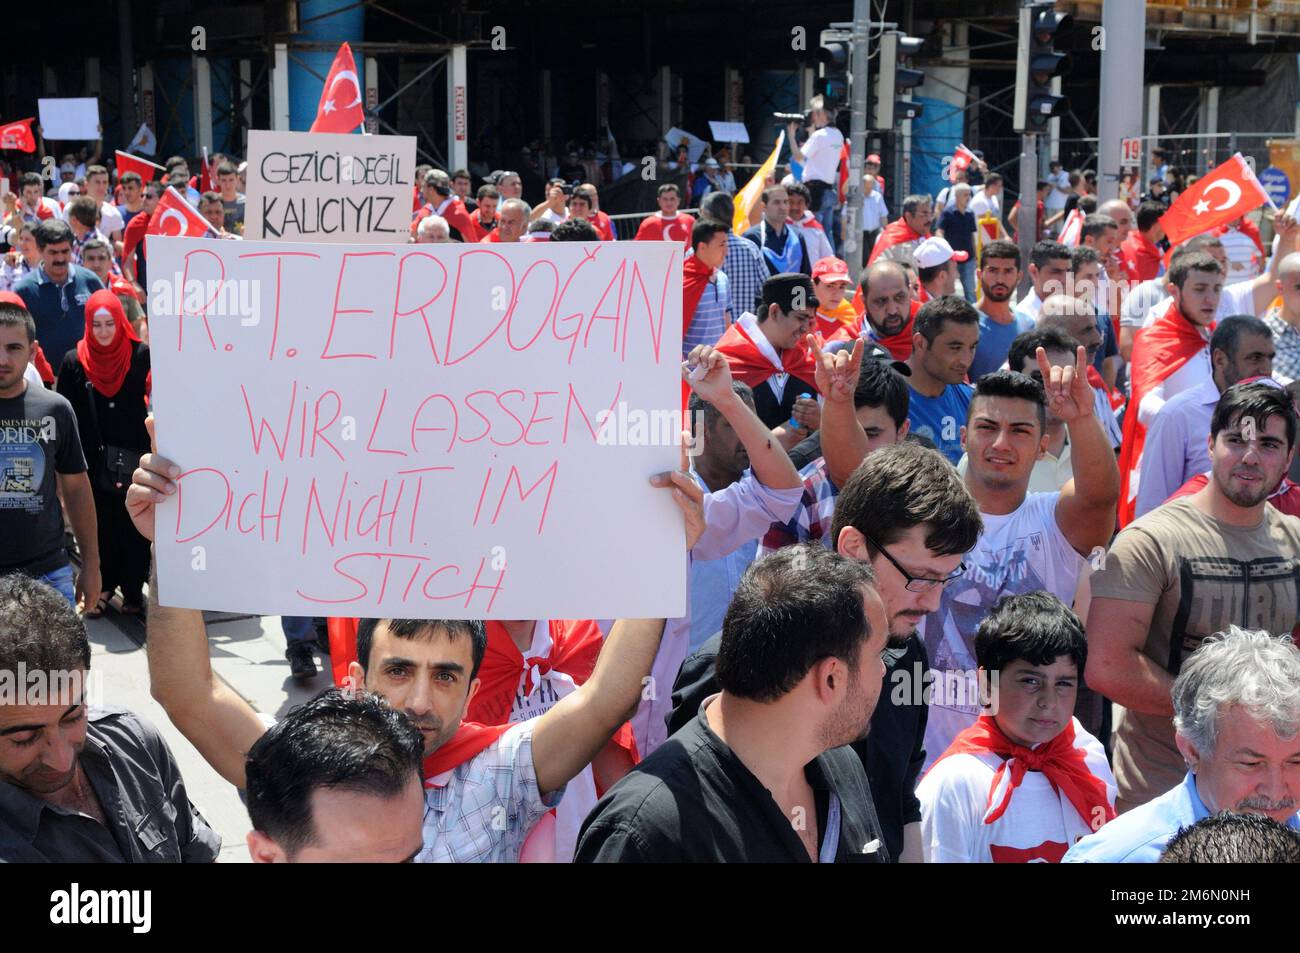 Vienna, Austria. Giugno 23, 2013. Secondo le autorità, più di 8.000 persone hanno manifestato domenica a Vienna per il primo ministro turco Recep Tayyip Erdogan. Targa con l'iscrizione "Erdogan, non ti lasceremo giù" Foto Stock